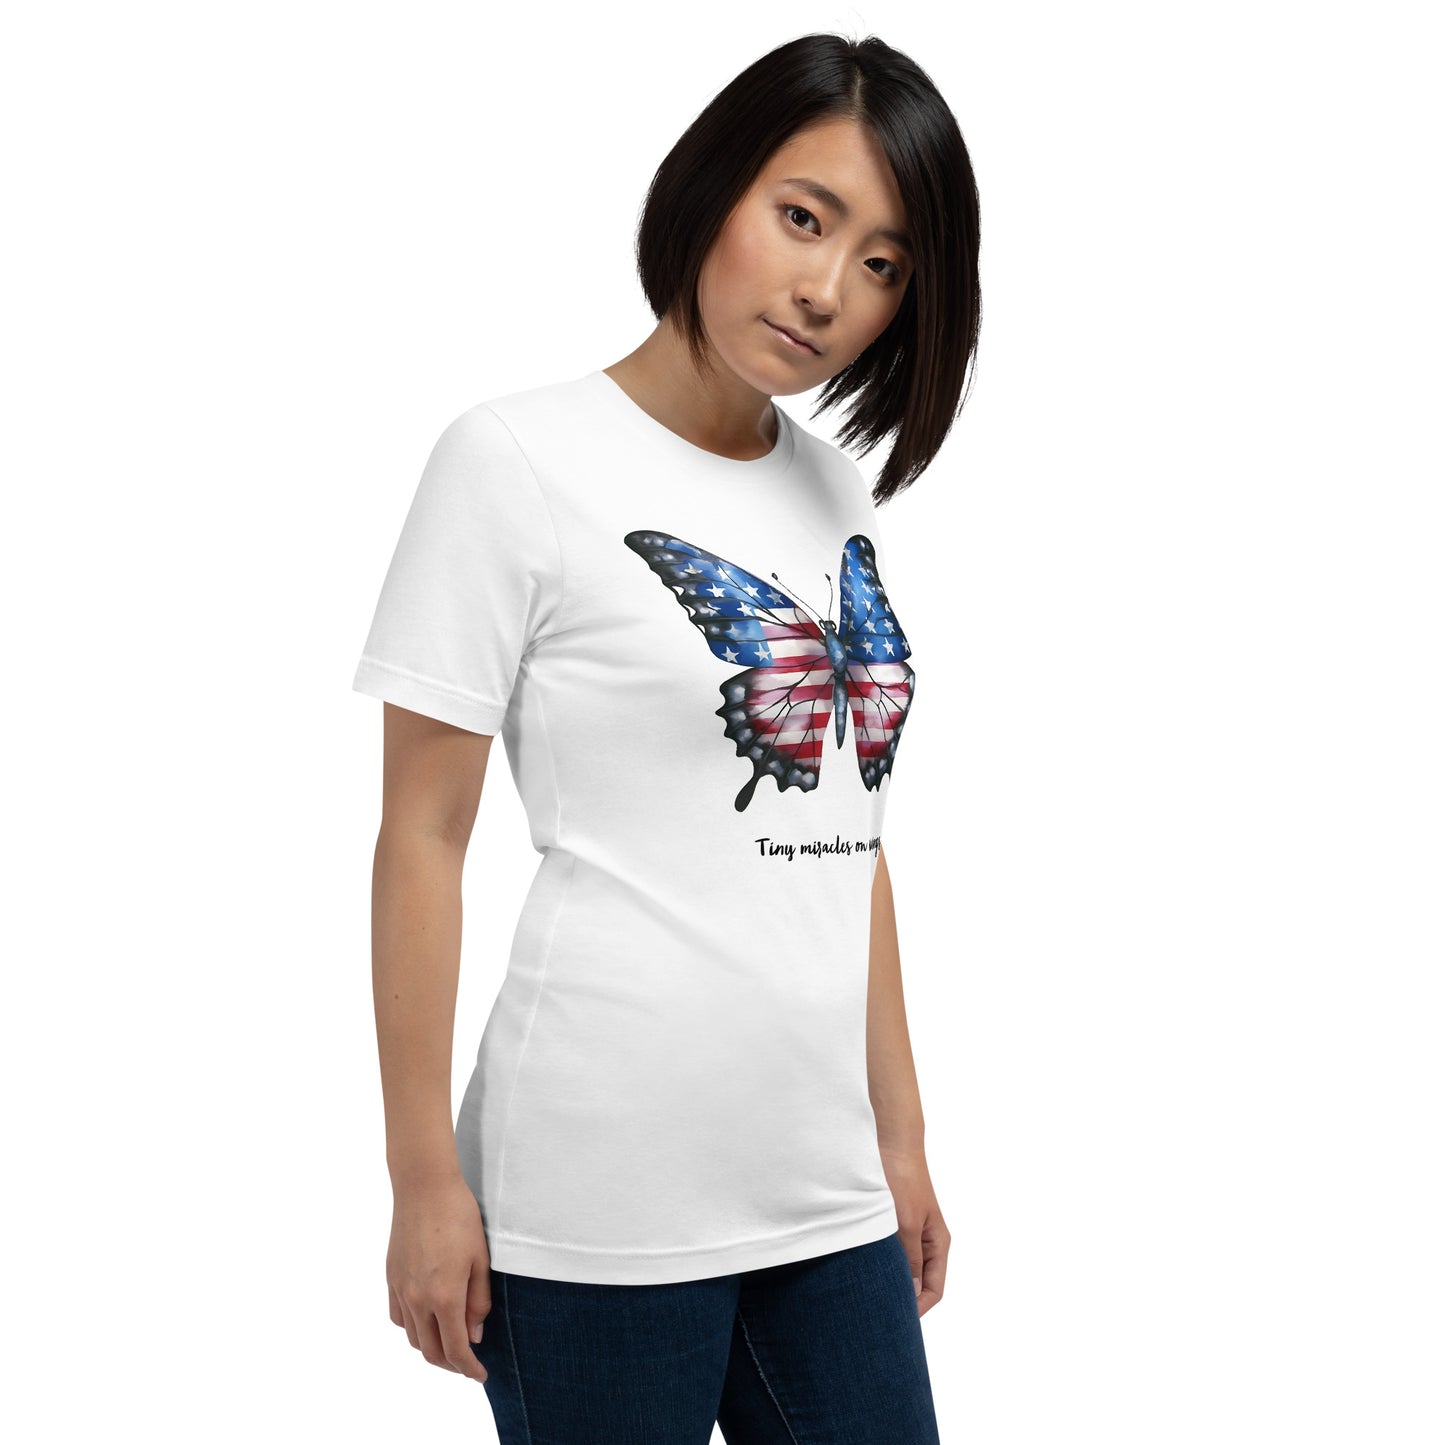 Camisa patriótica personalizável de borboleta para o verdadeiro amante de borboletas que há em você